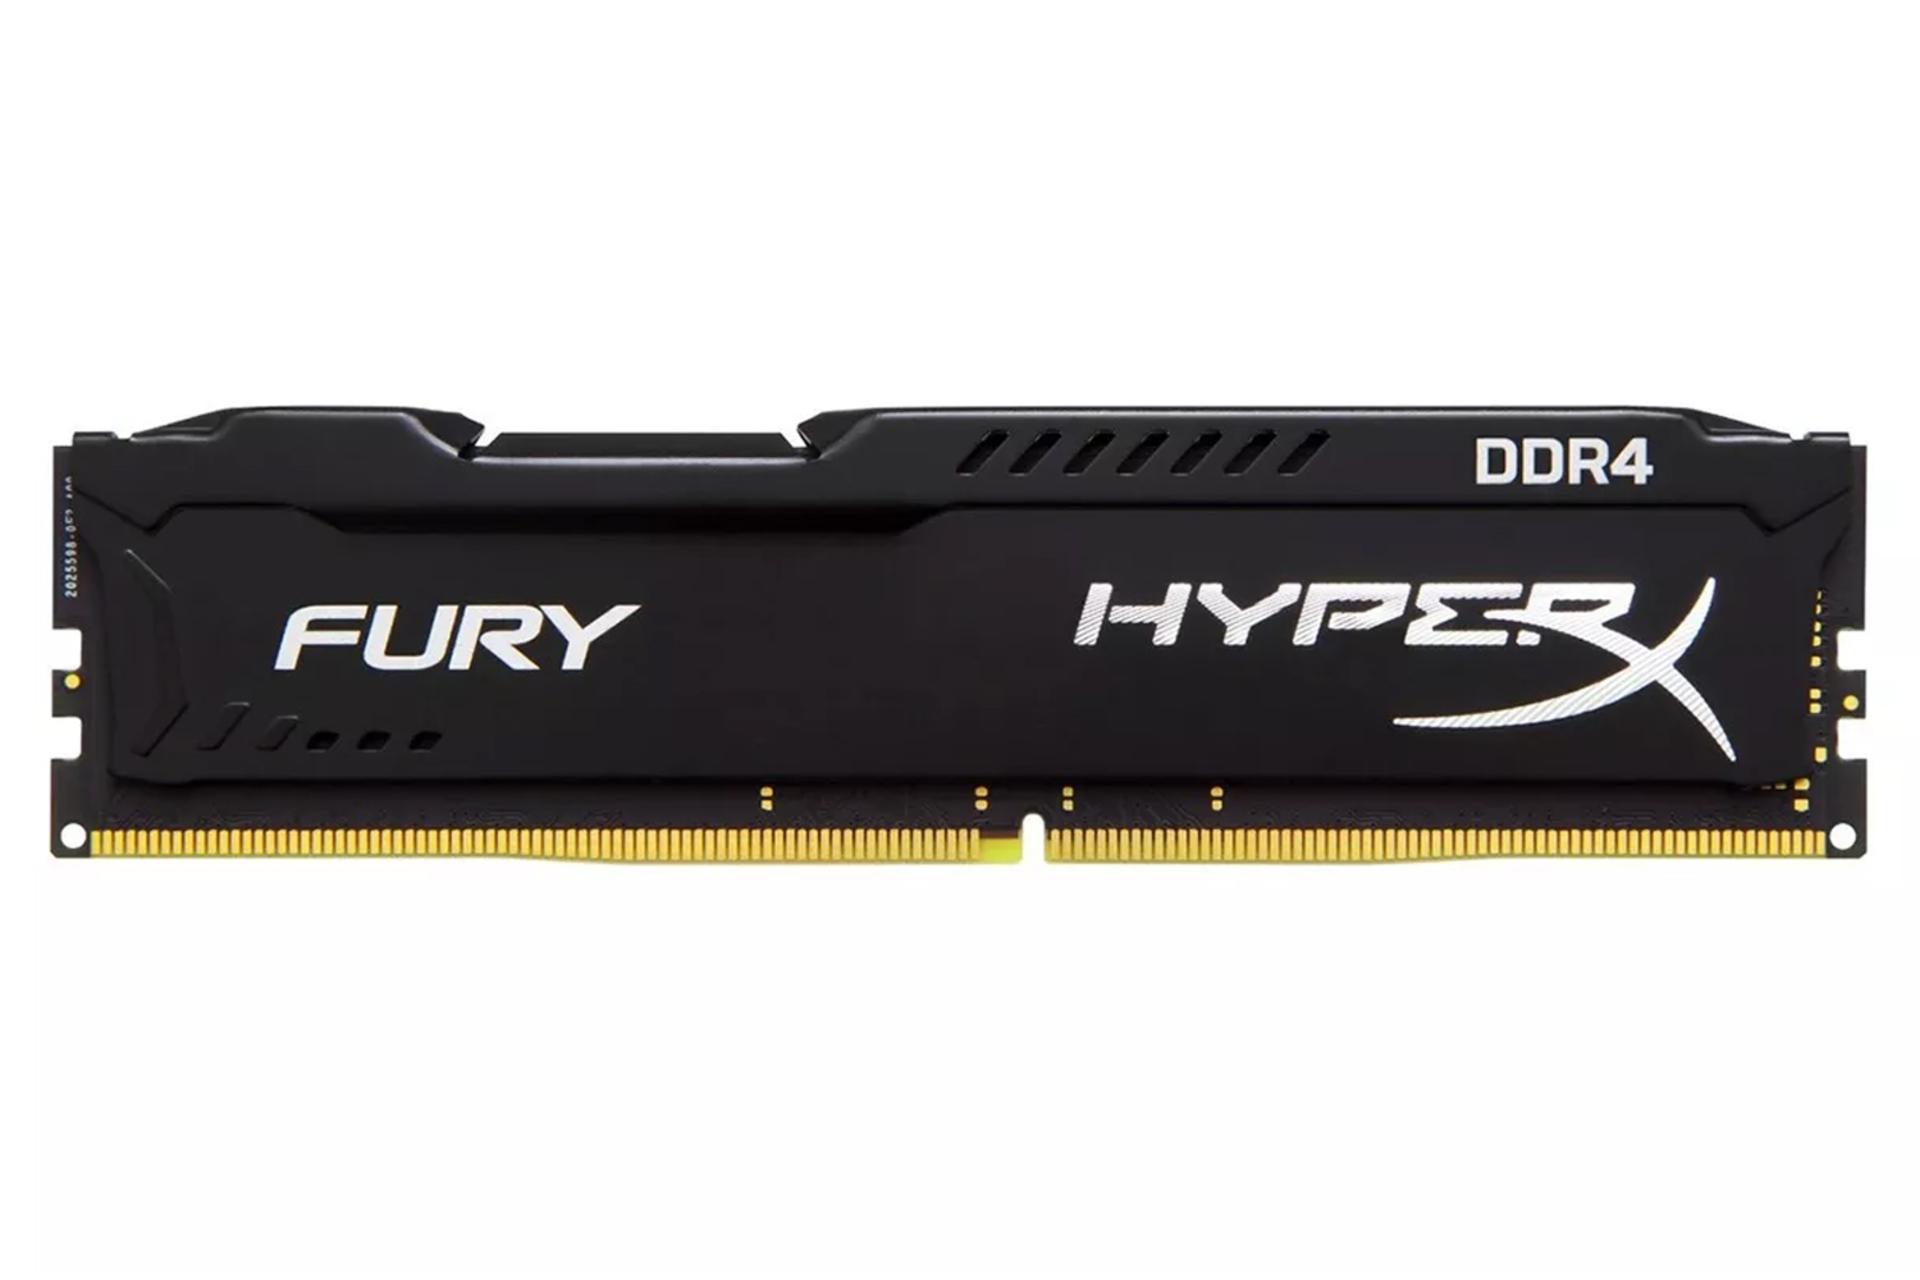 مرجع متخصصين ايران نماي جلو هايپرايكس Fury ظرفيت 16 گيگابايت از نوع DDR4-2400